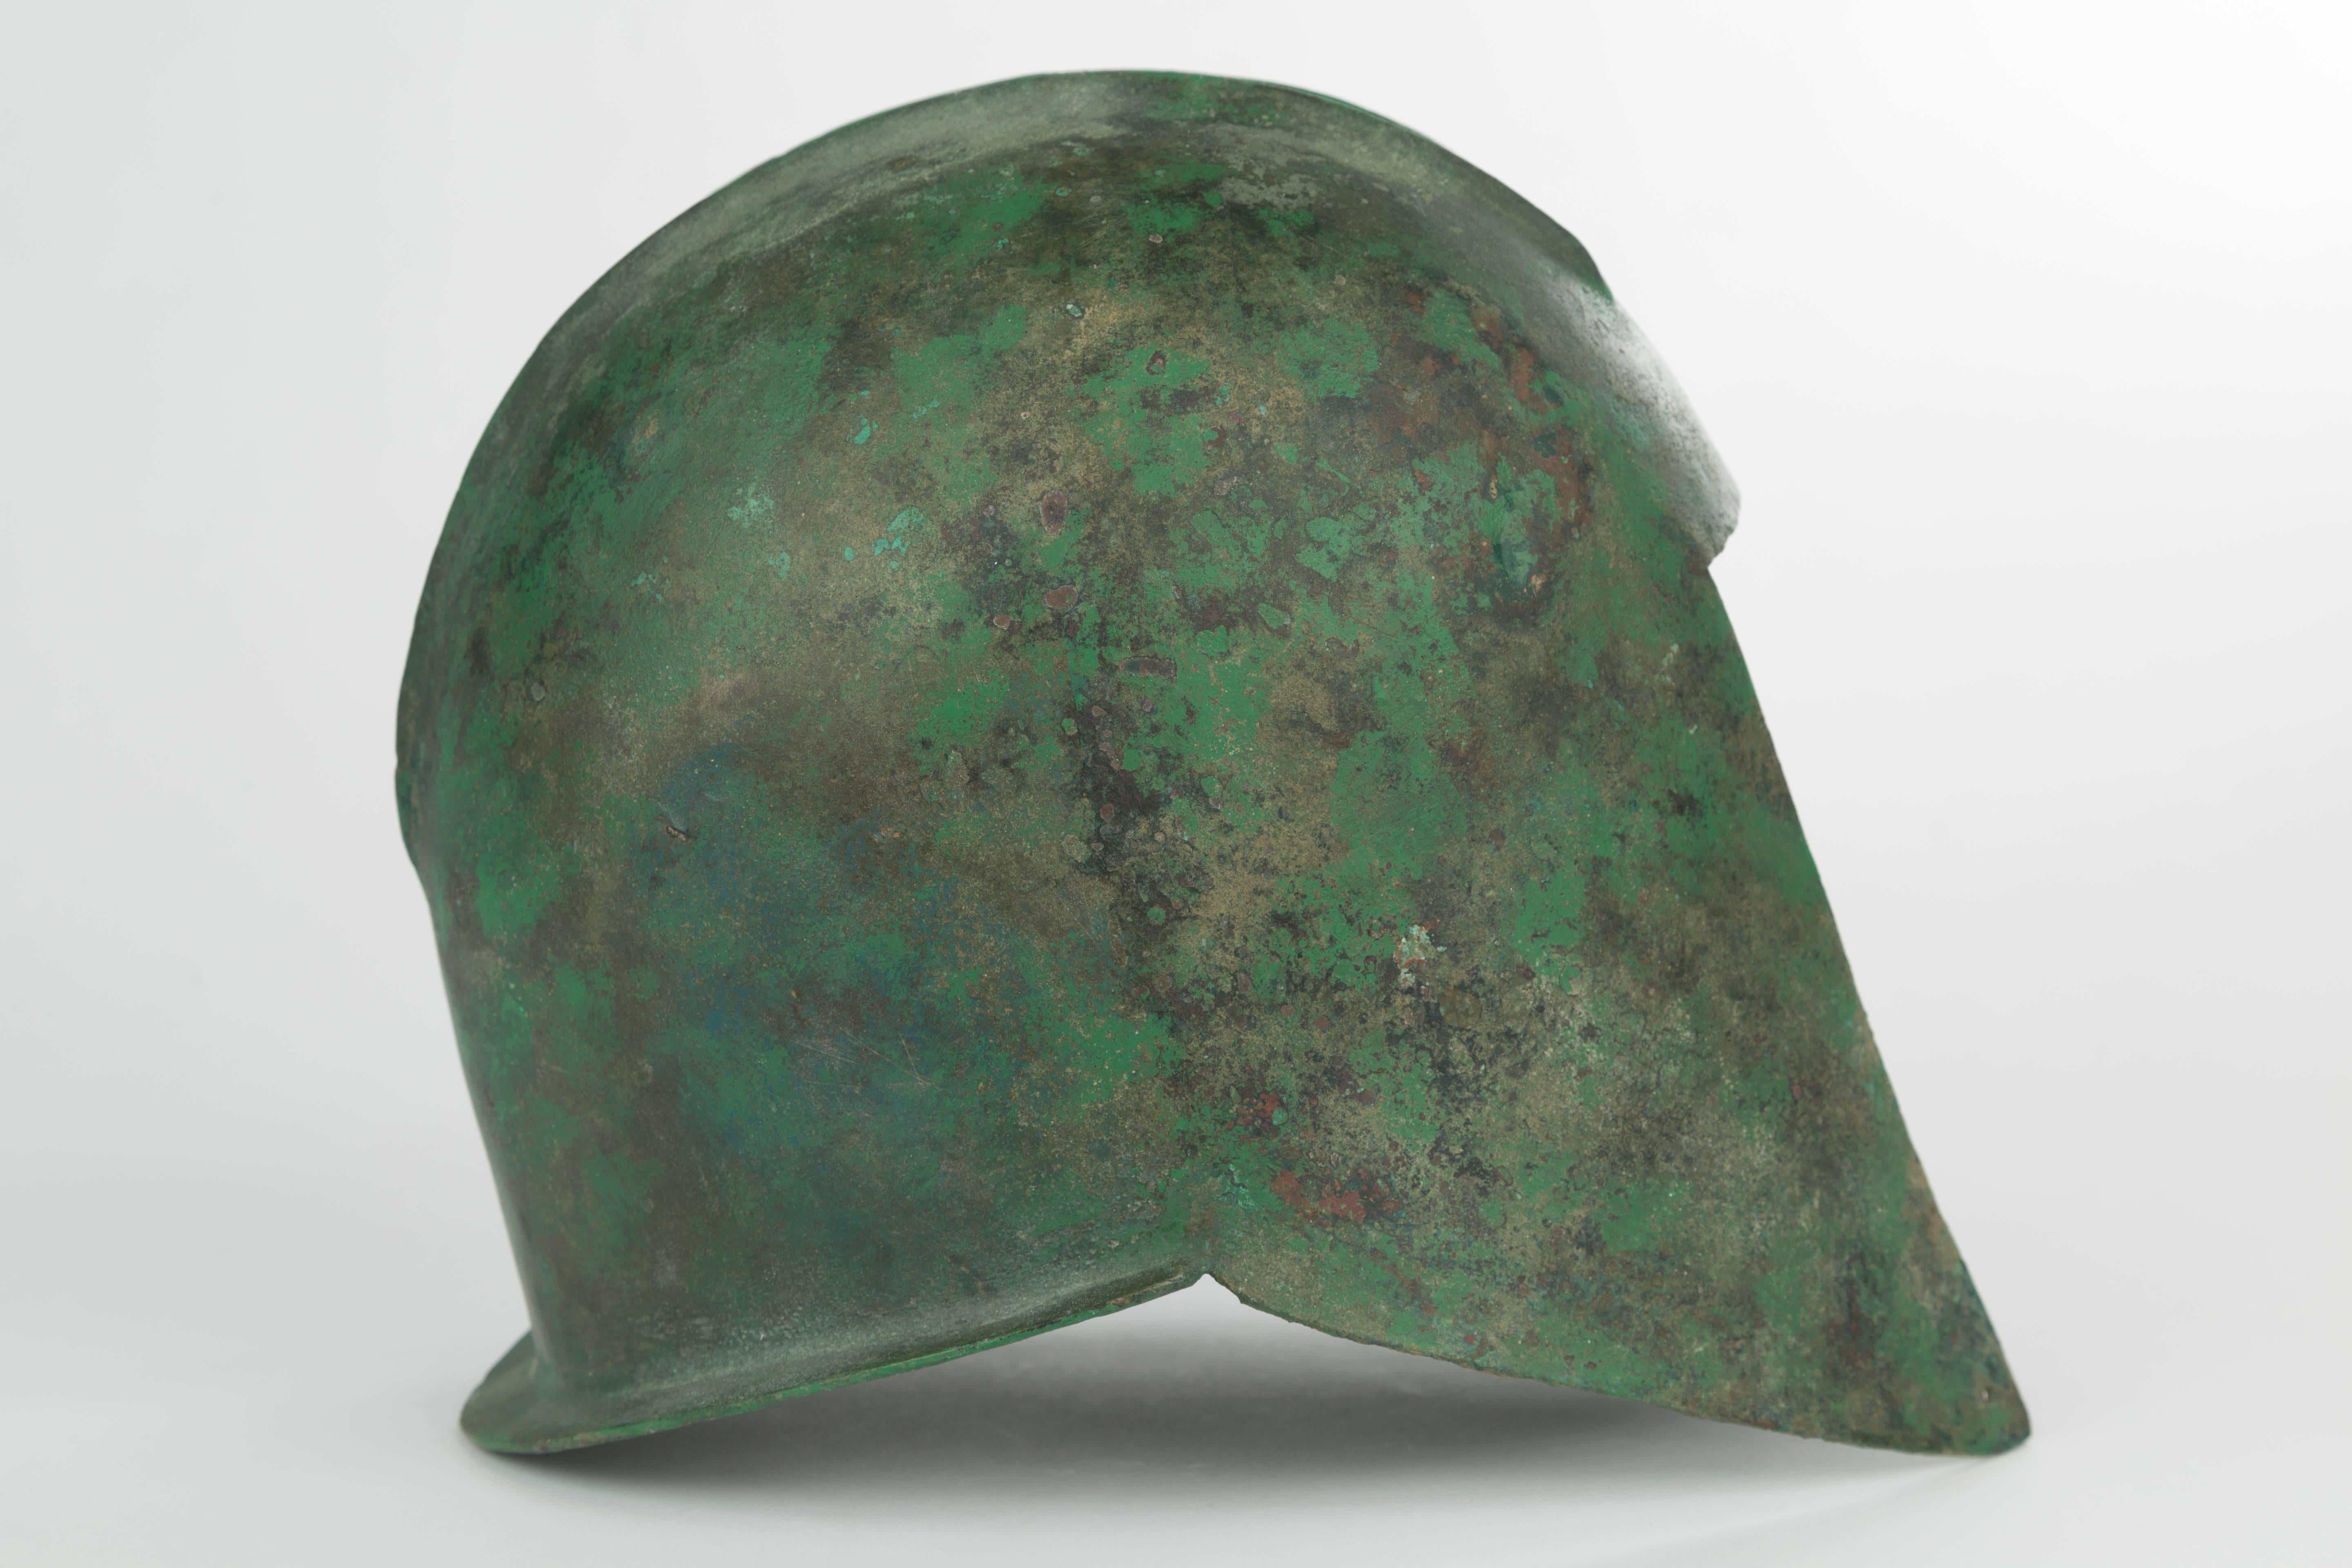 Illyrischer Helm aus griechischer Bronze
Archaische Periode, ca. 500-500 v. Chr.
Aus Bronzeblech gehämmert, gewölbte Form mit zwei parallelen Rippen an der Schale, einem geraden Visier, zwei erhabenen parallelen Rippen, die von vorne nach hinten